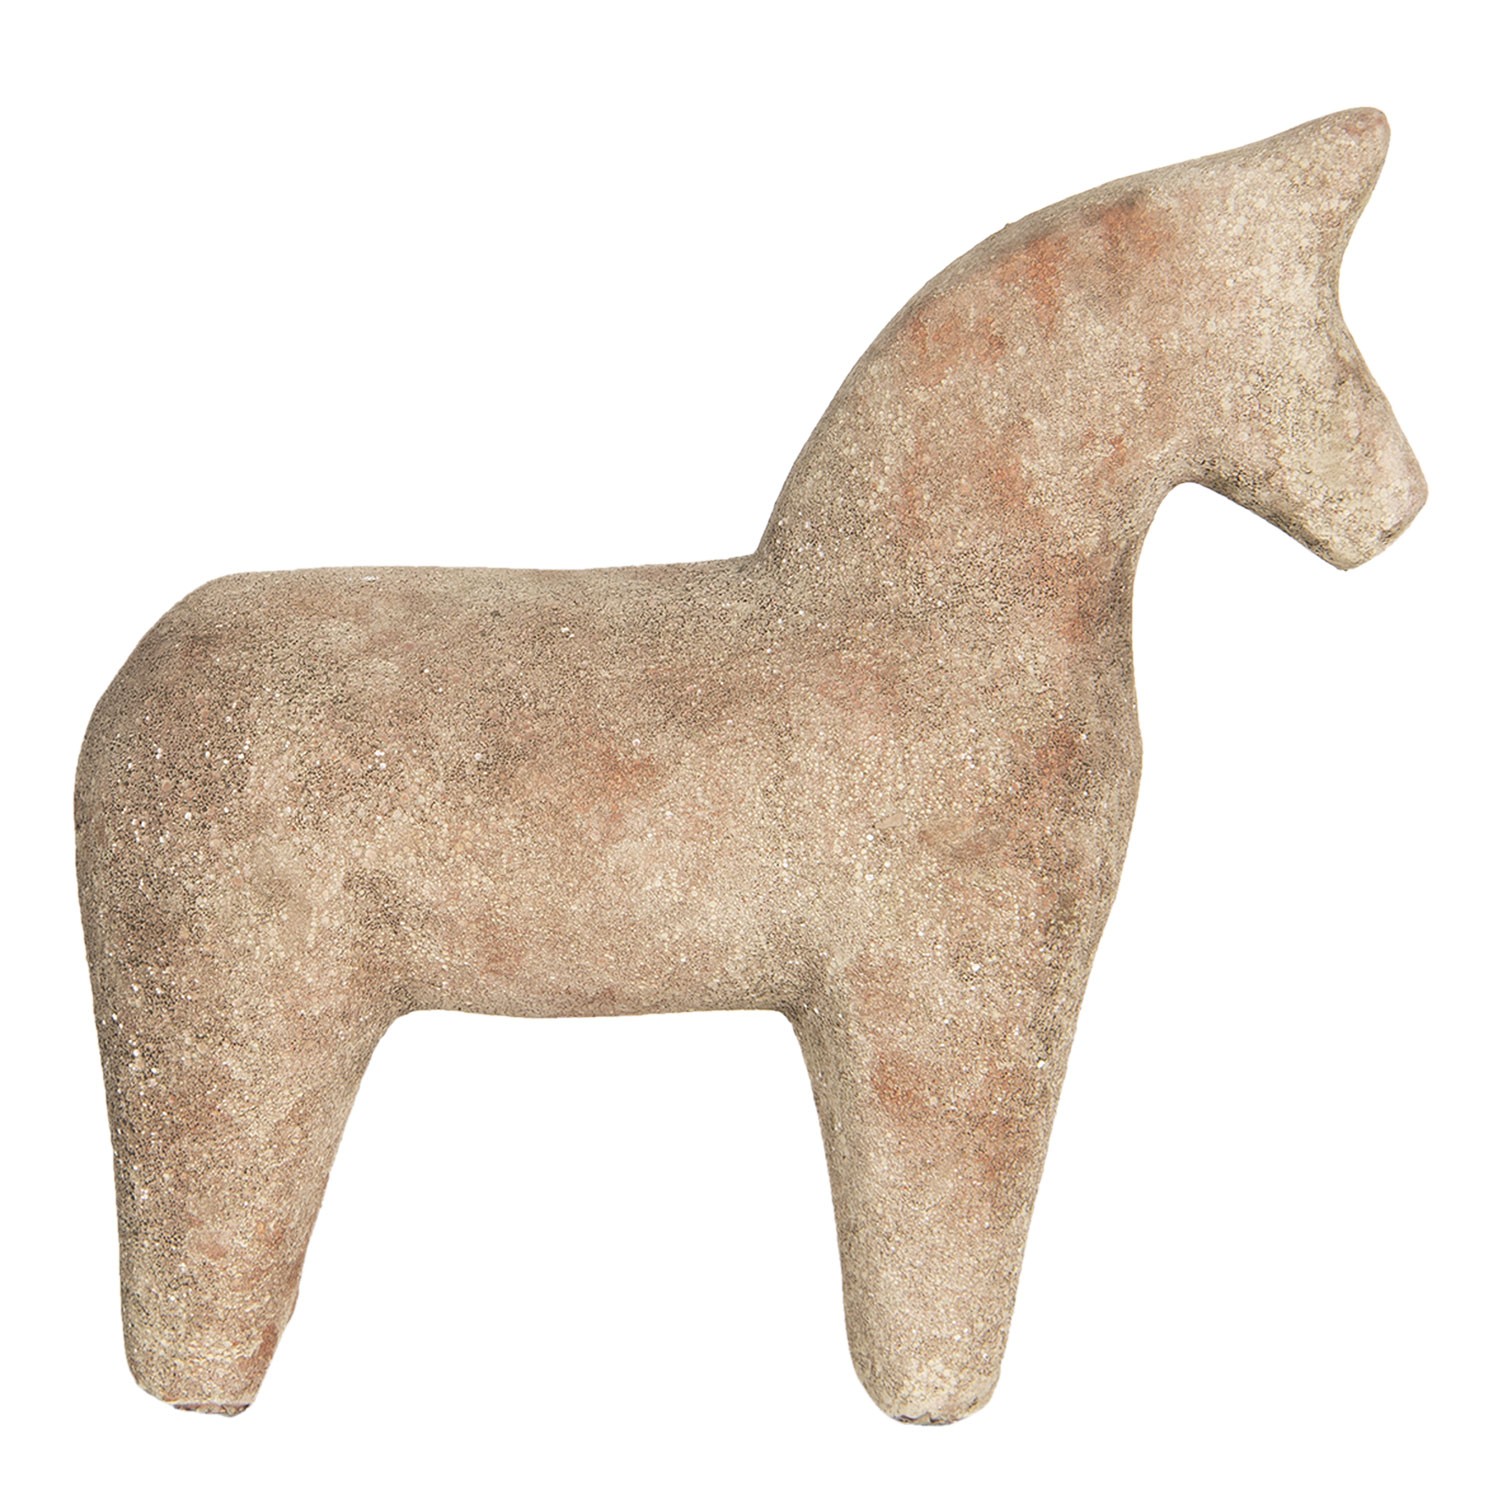 Keramická dekorace koně v hnědo-cihlovém provedení - 21*7*20 cm Clayre & Eef